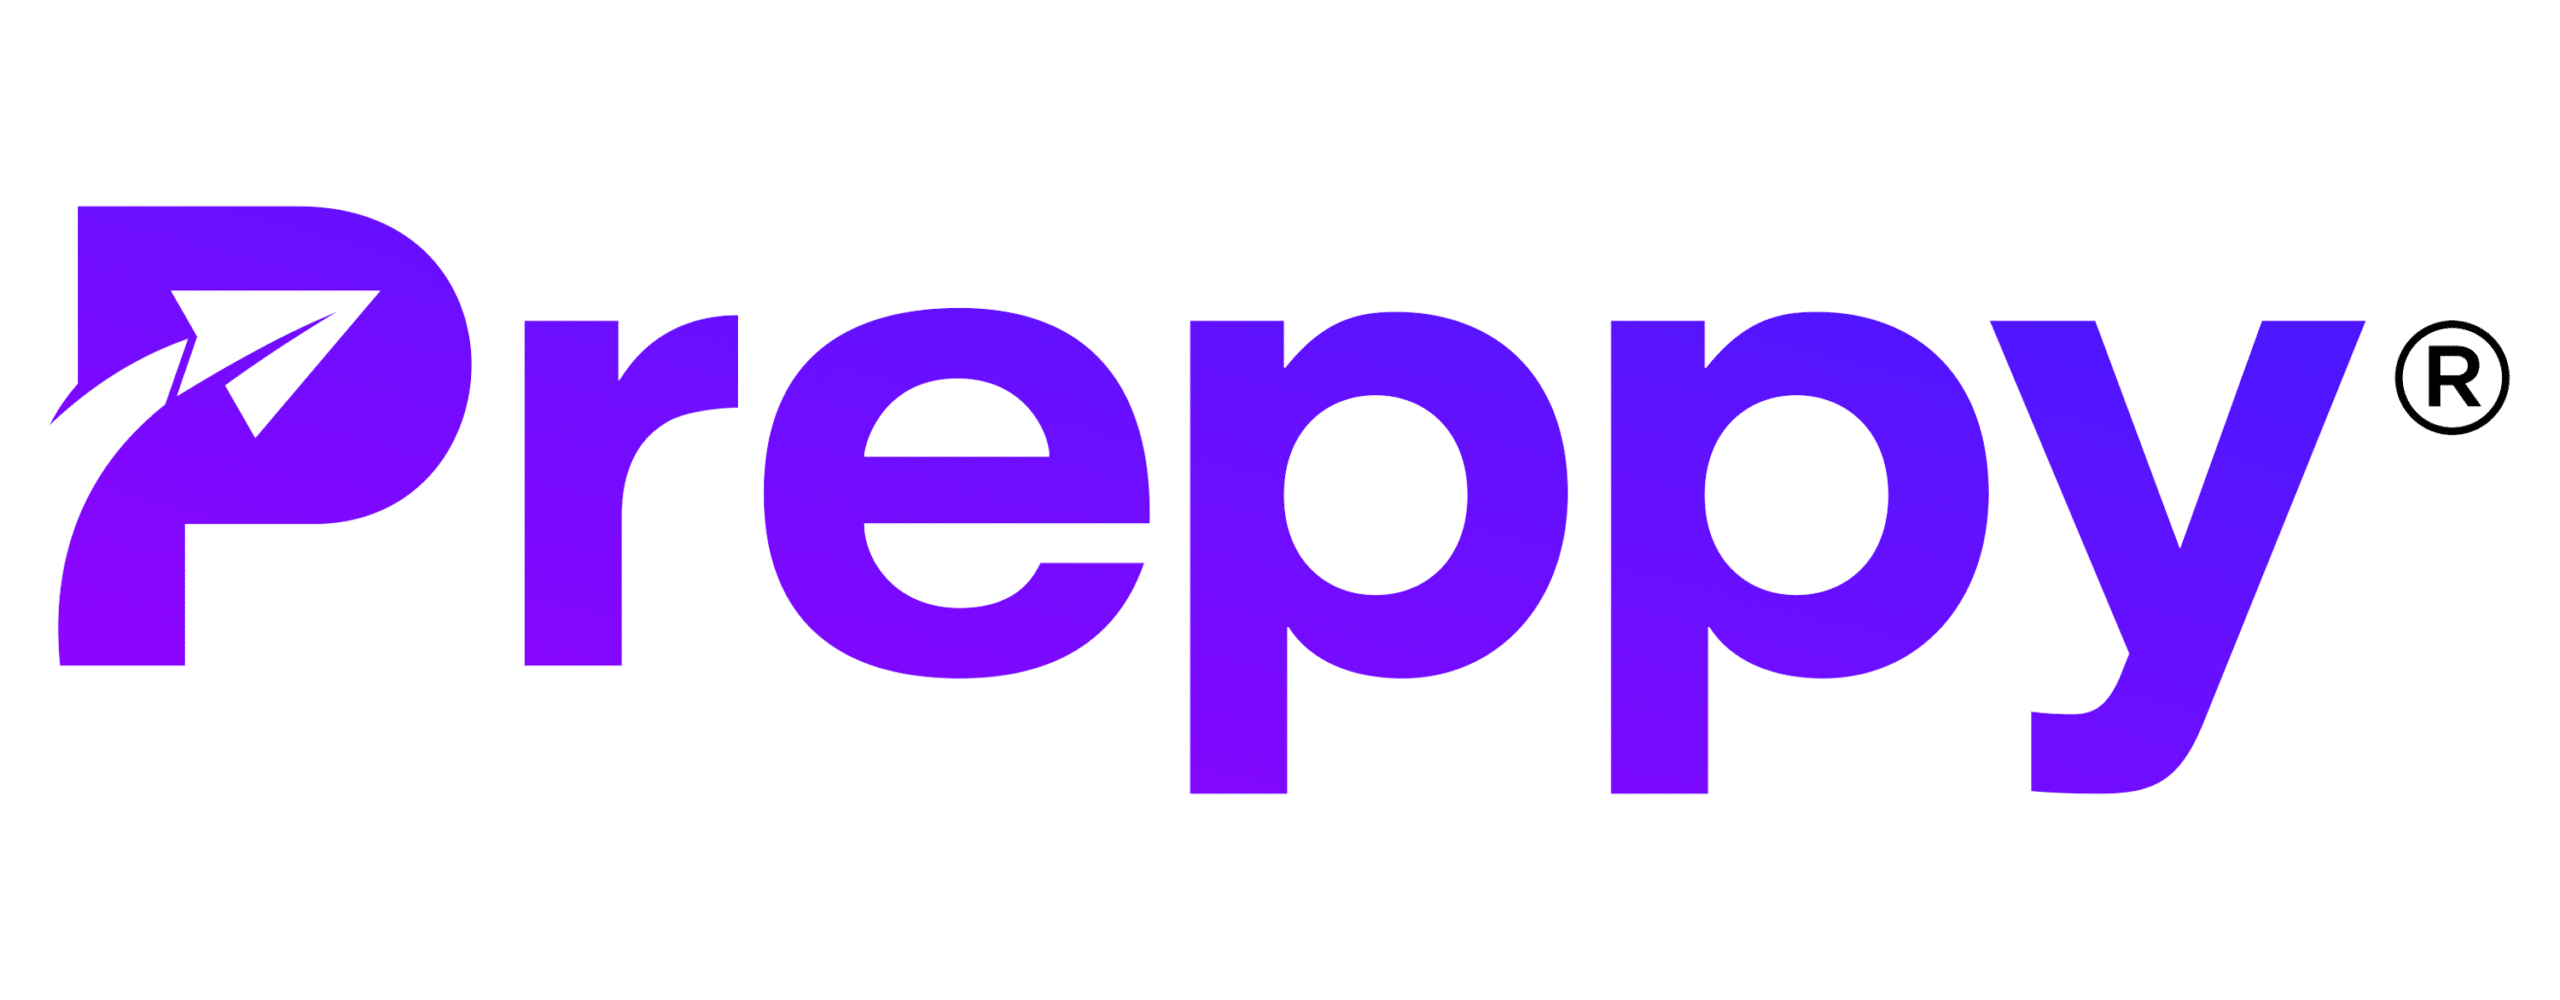 preppy-color-logo